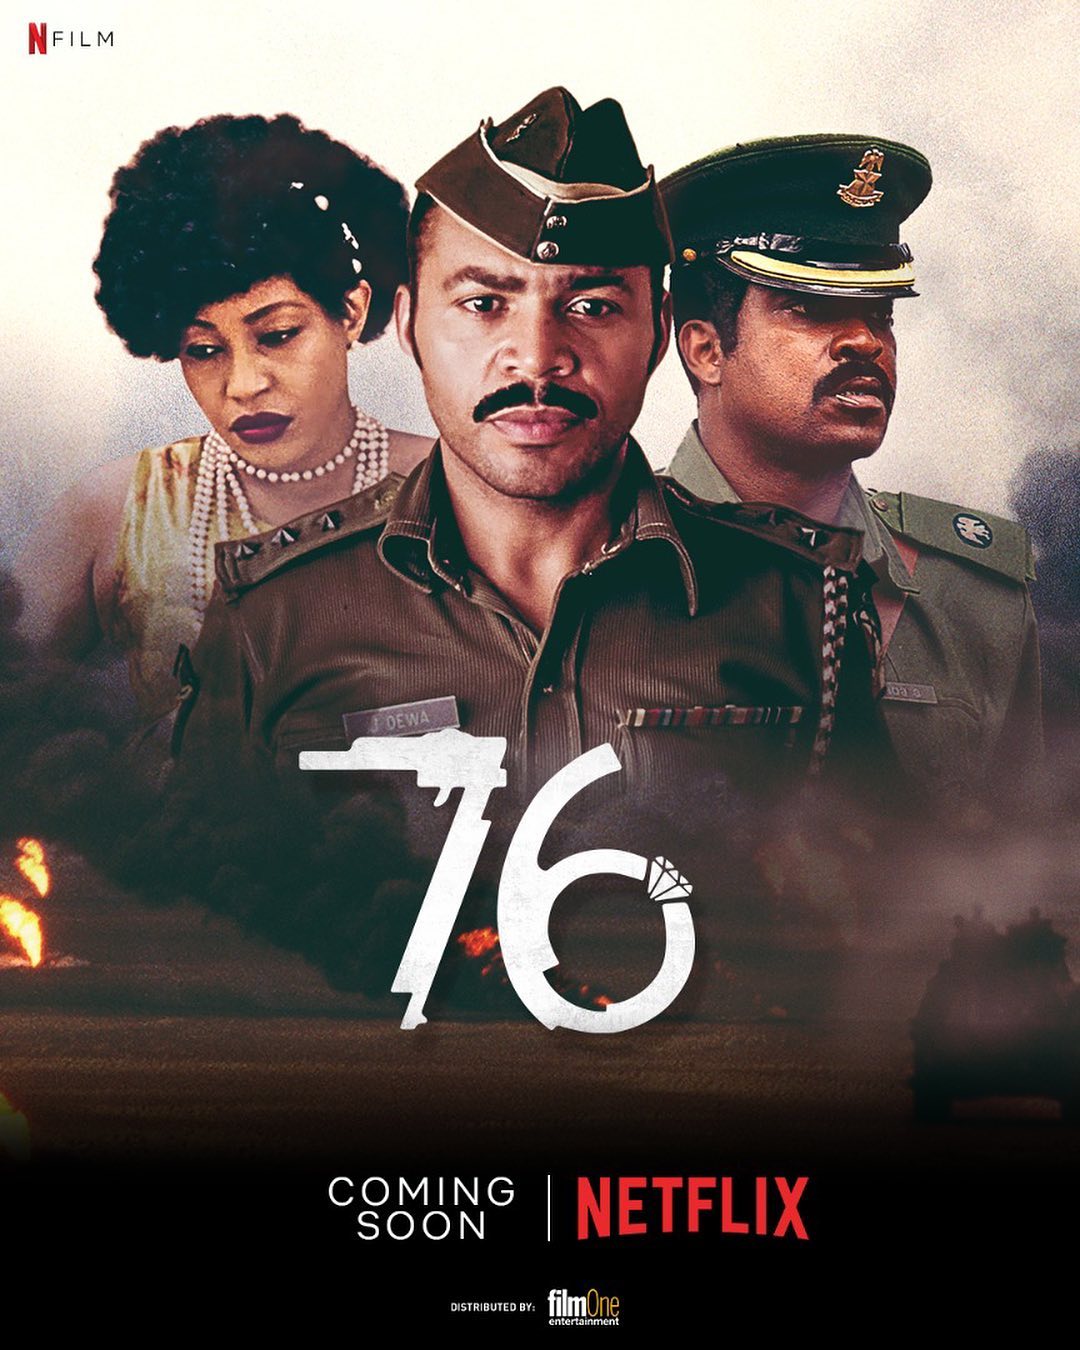 76 movie to premiere on Netflix | Pulse Nigeria